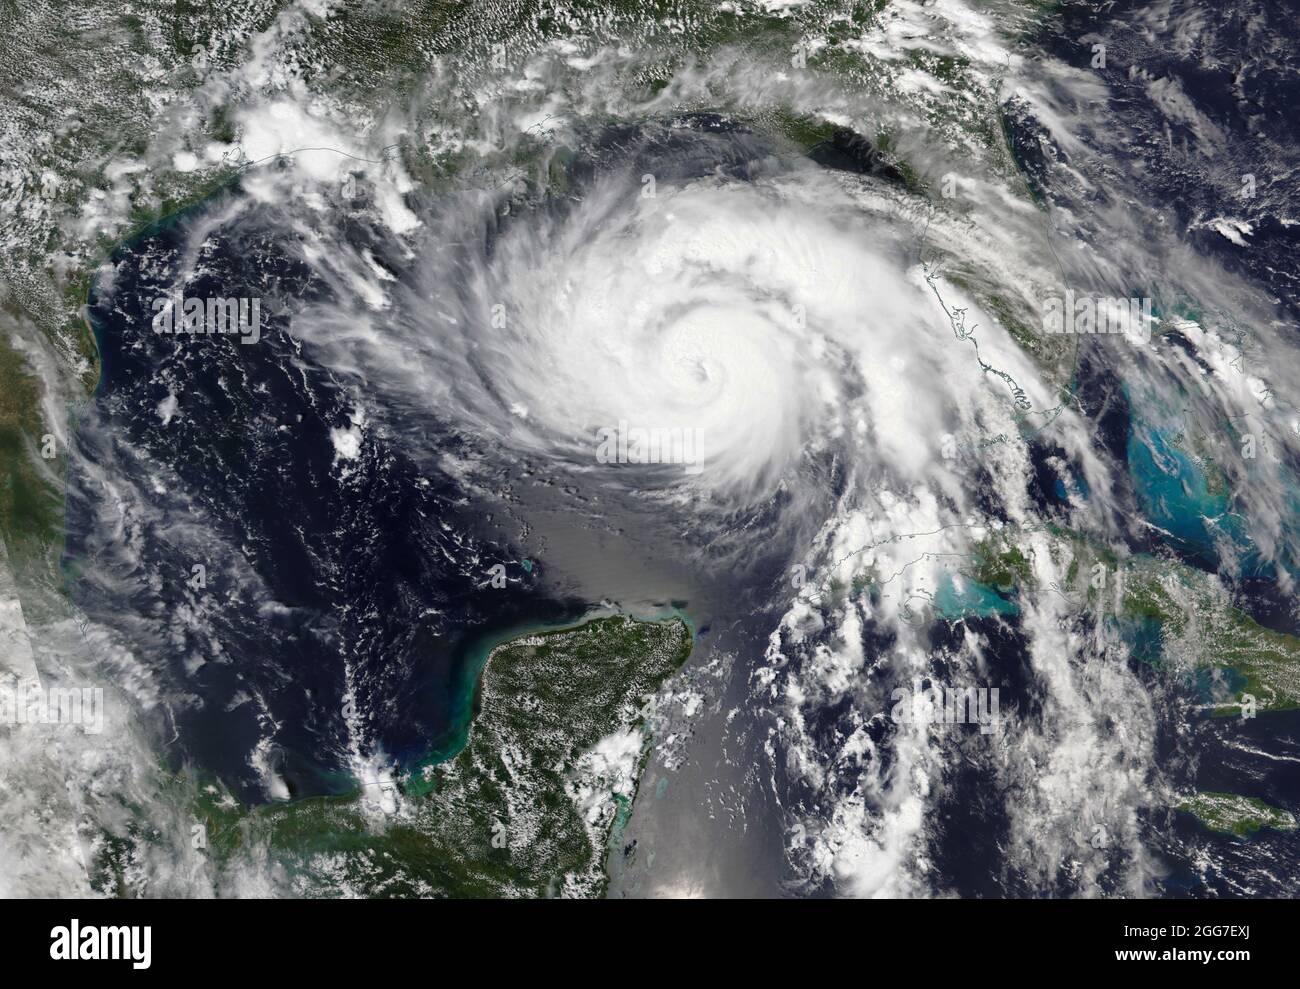 GOLF VON MEXIKO - 28. August 2021 - der Or"Ida" wurde am 28. August 2021  von NASA-MODIS-Satelliten aus dem All betrachtet. Hurrikan Ida  landniederließ in Louisi Stockfotografie - Alamy